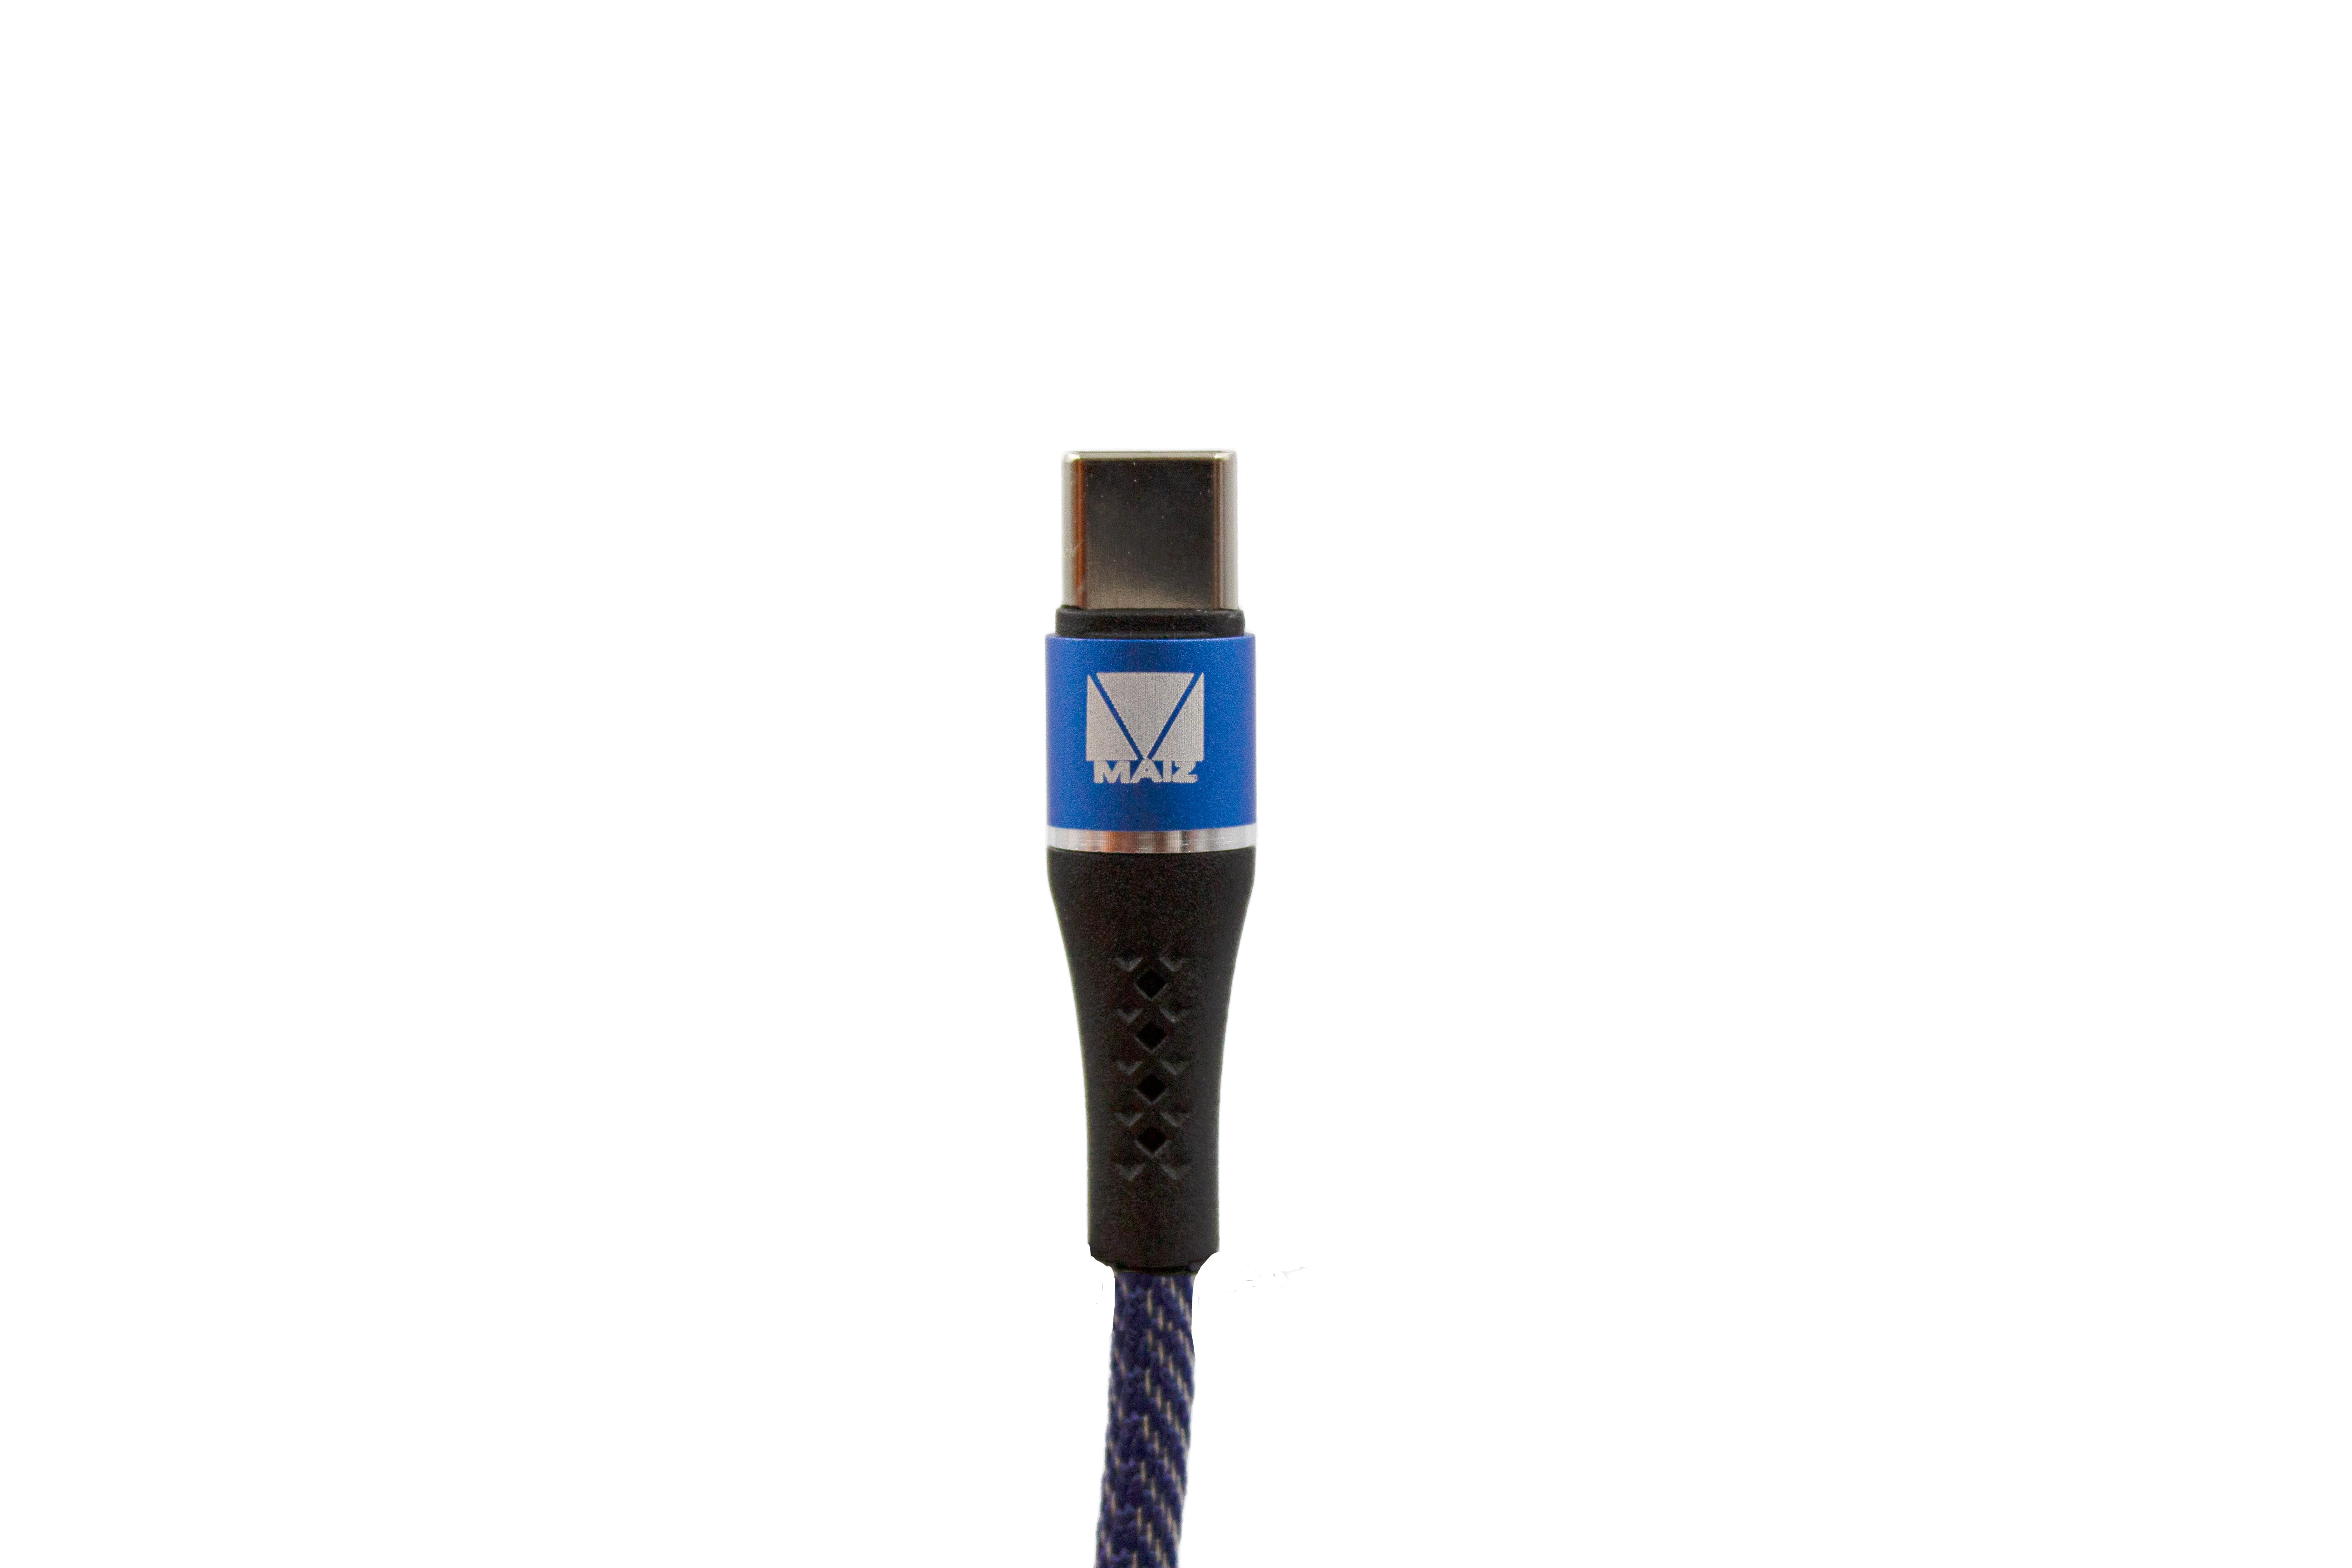 Cable Micro Usb V8 2.1a 1hora Datos Carga Rápida 1m Cab177 Negro